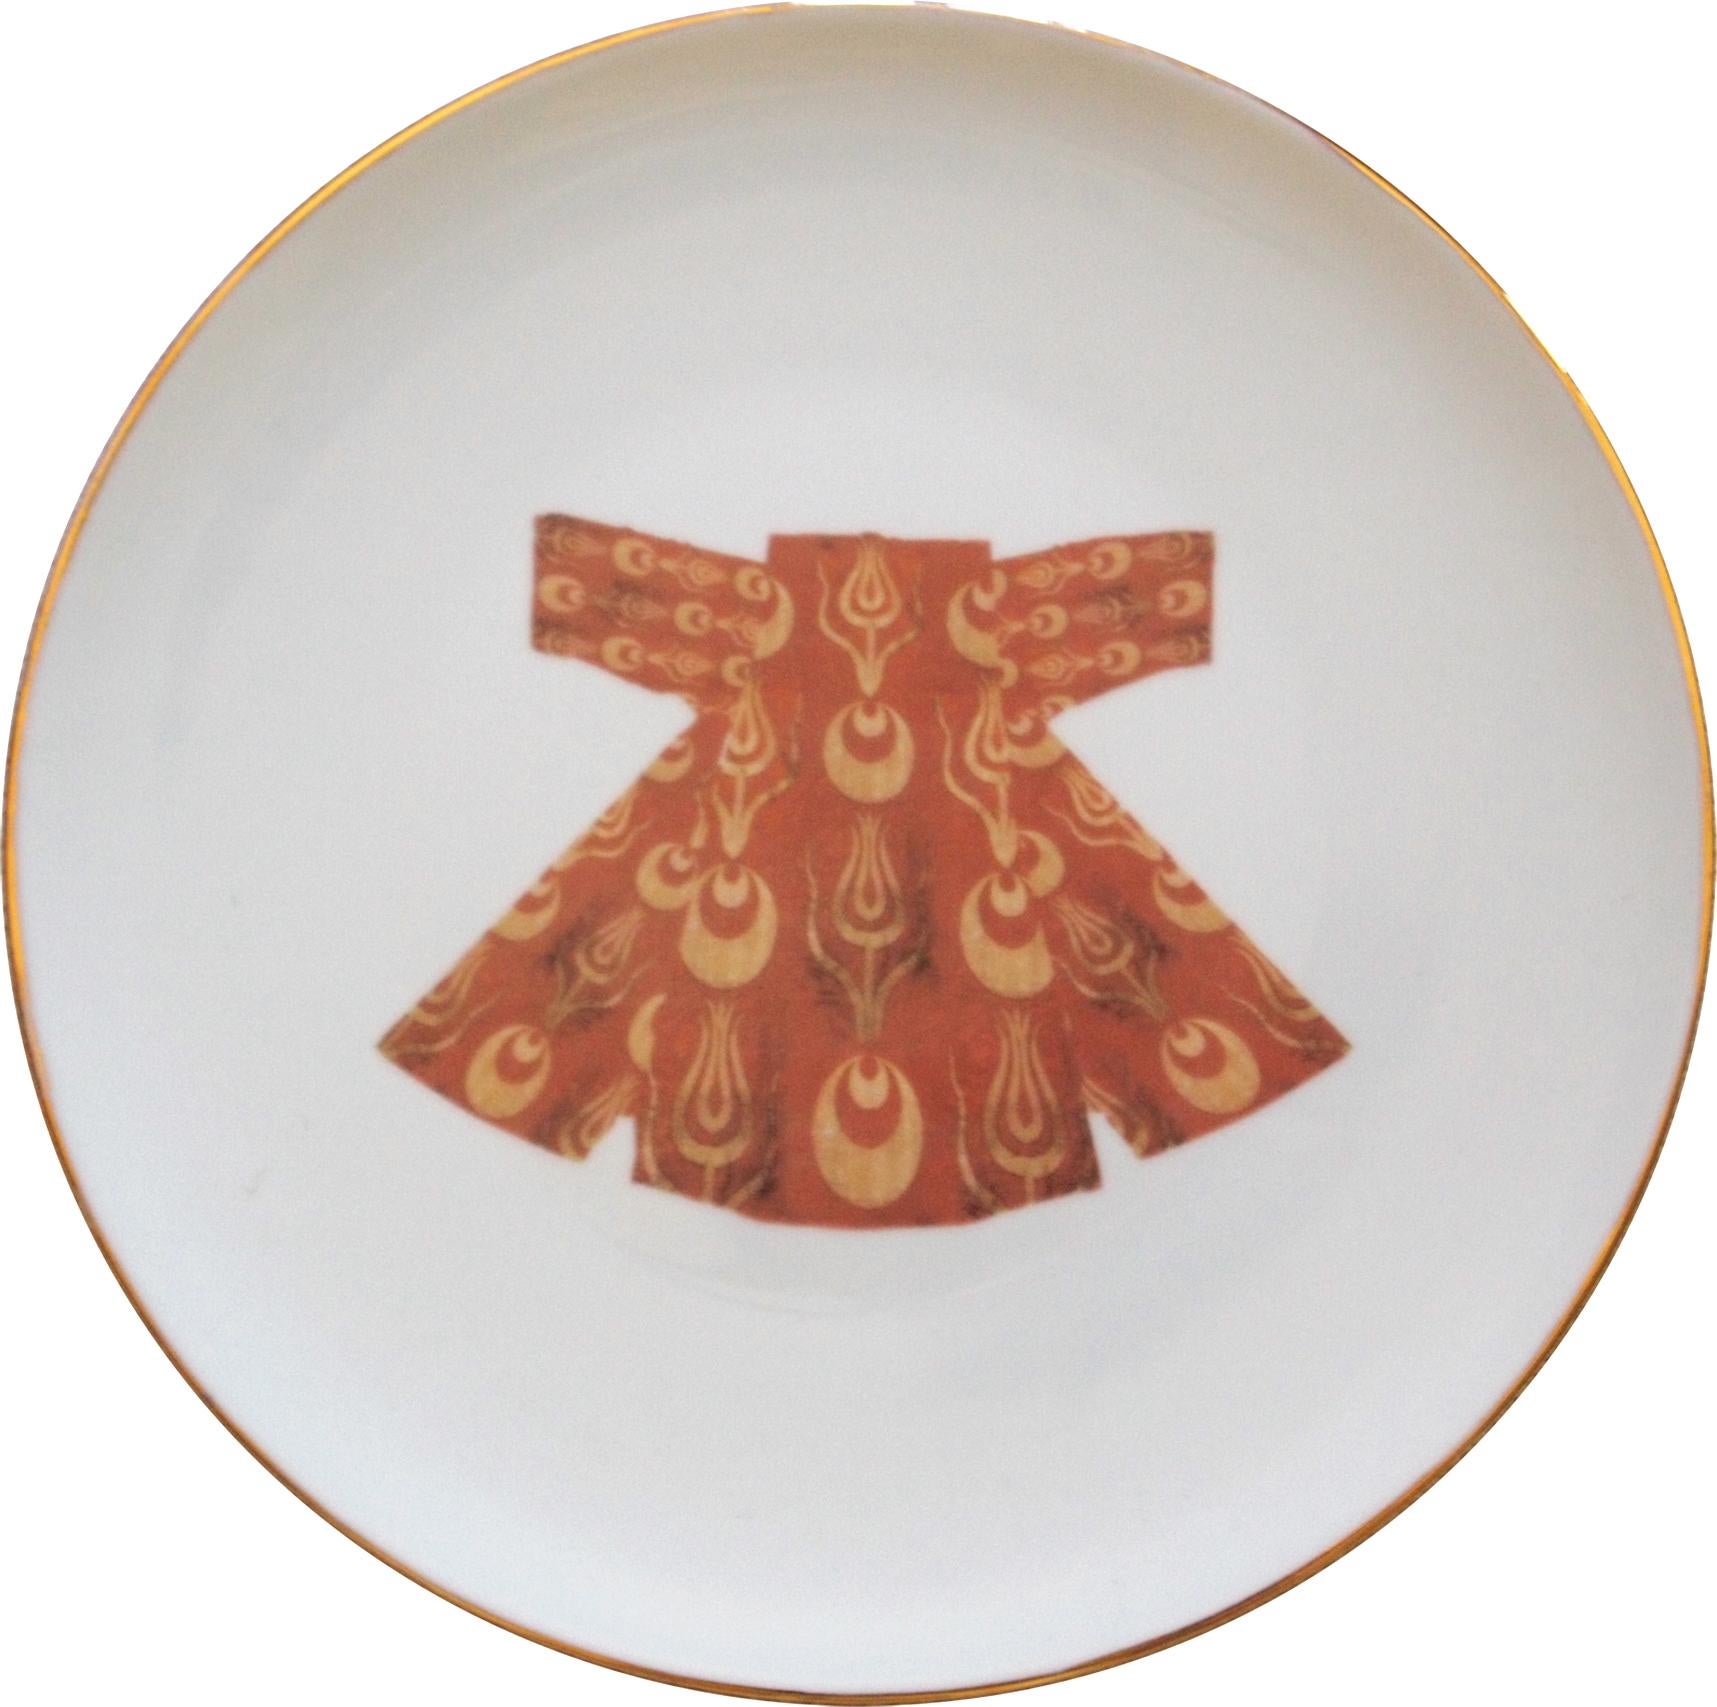 Assiette plate ottomane en porcelaine de caftan avec bordure dorée fabriquée en Italie Kaft3